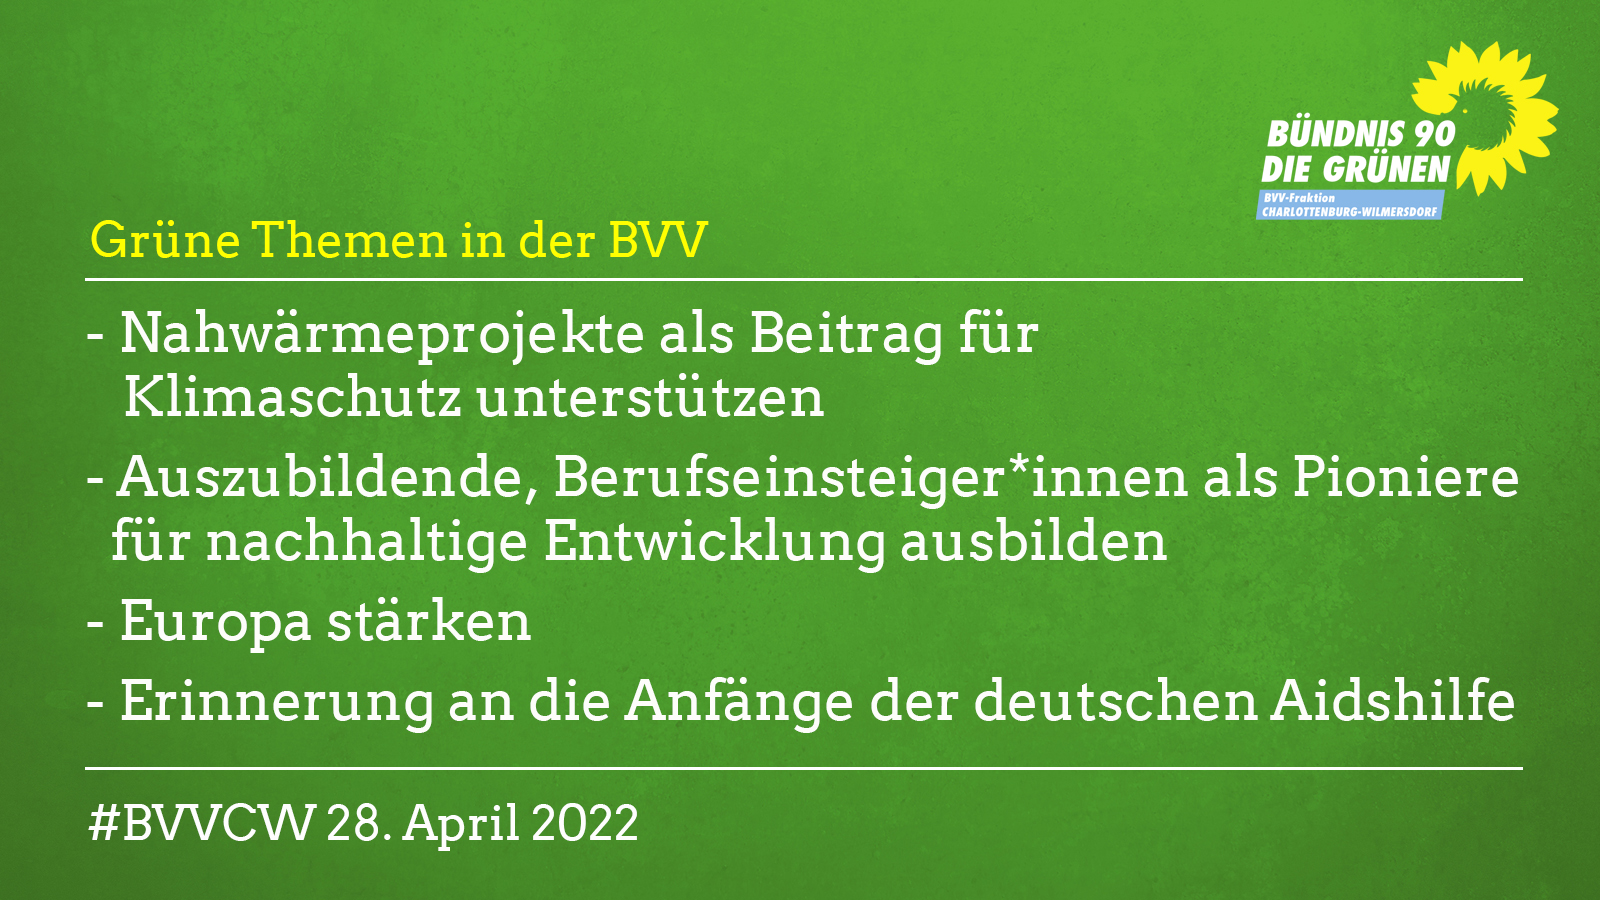 Grüne Themen in der BVV am 28.4.2022